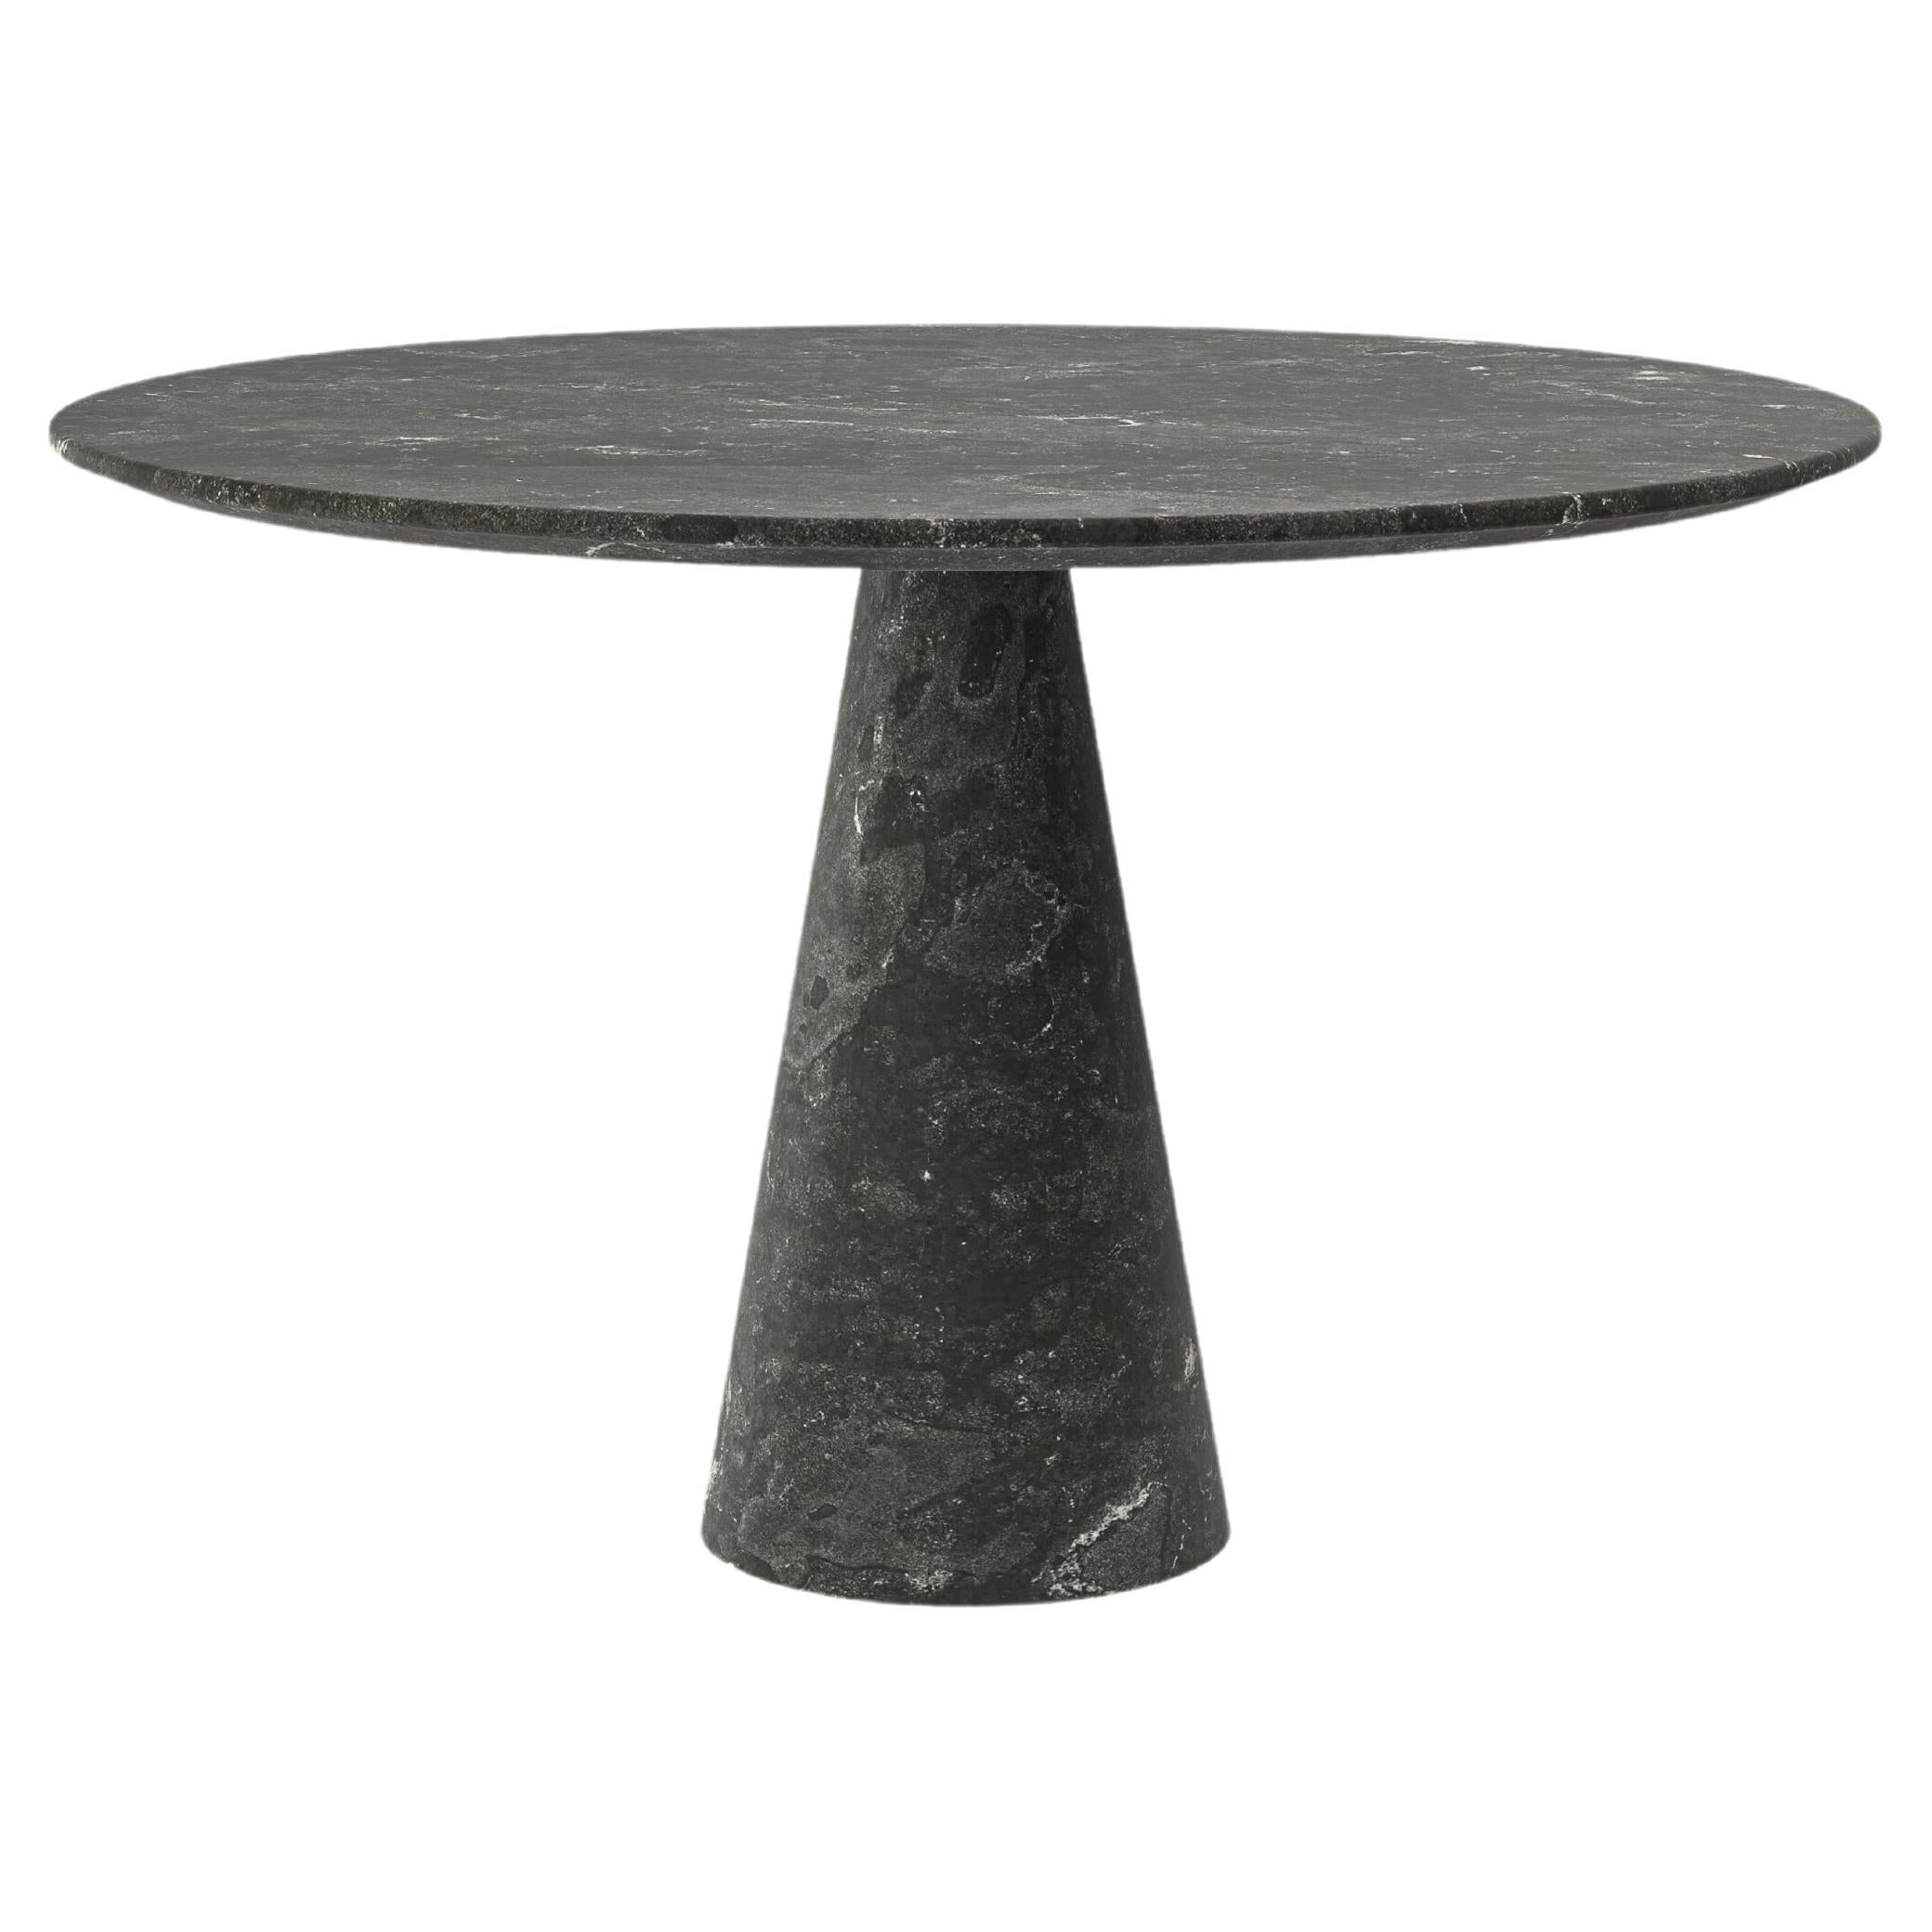 FORM(LA) Cono Round Dining Table 42”L x 42”W x 30”H Nero Petite Granite